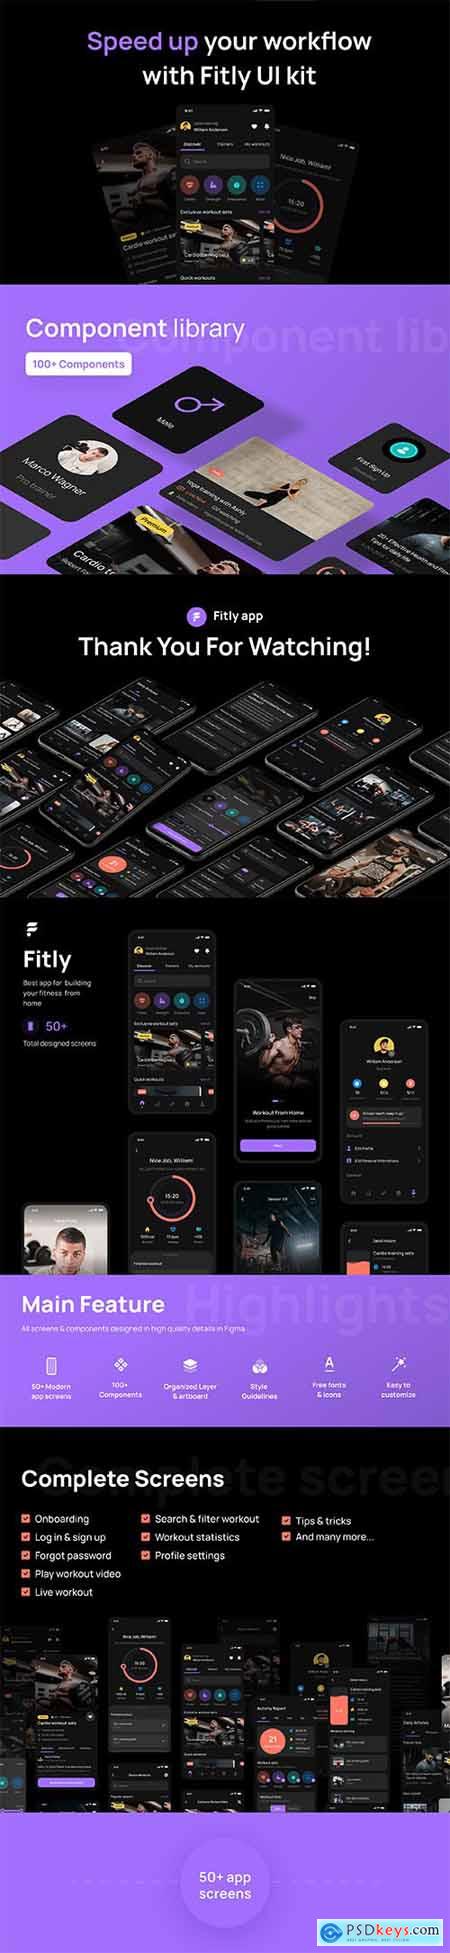 Fitly App - Modern Fitness App UI Design Kit